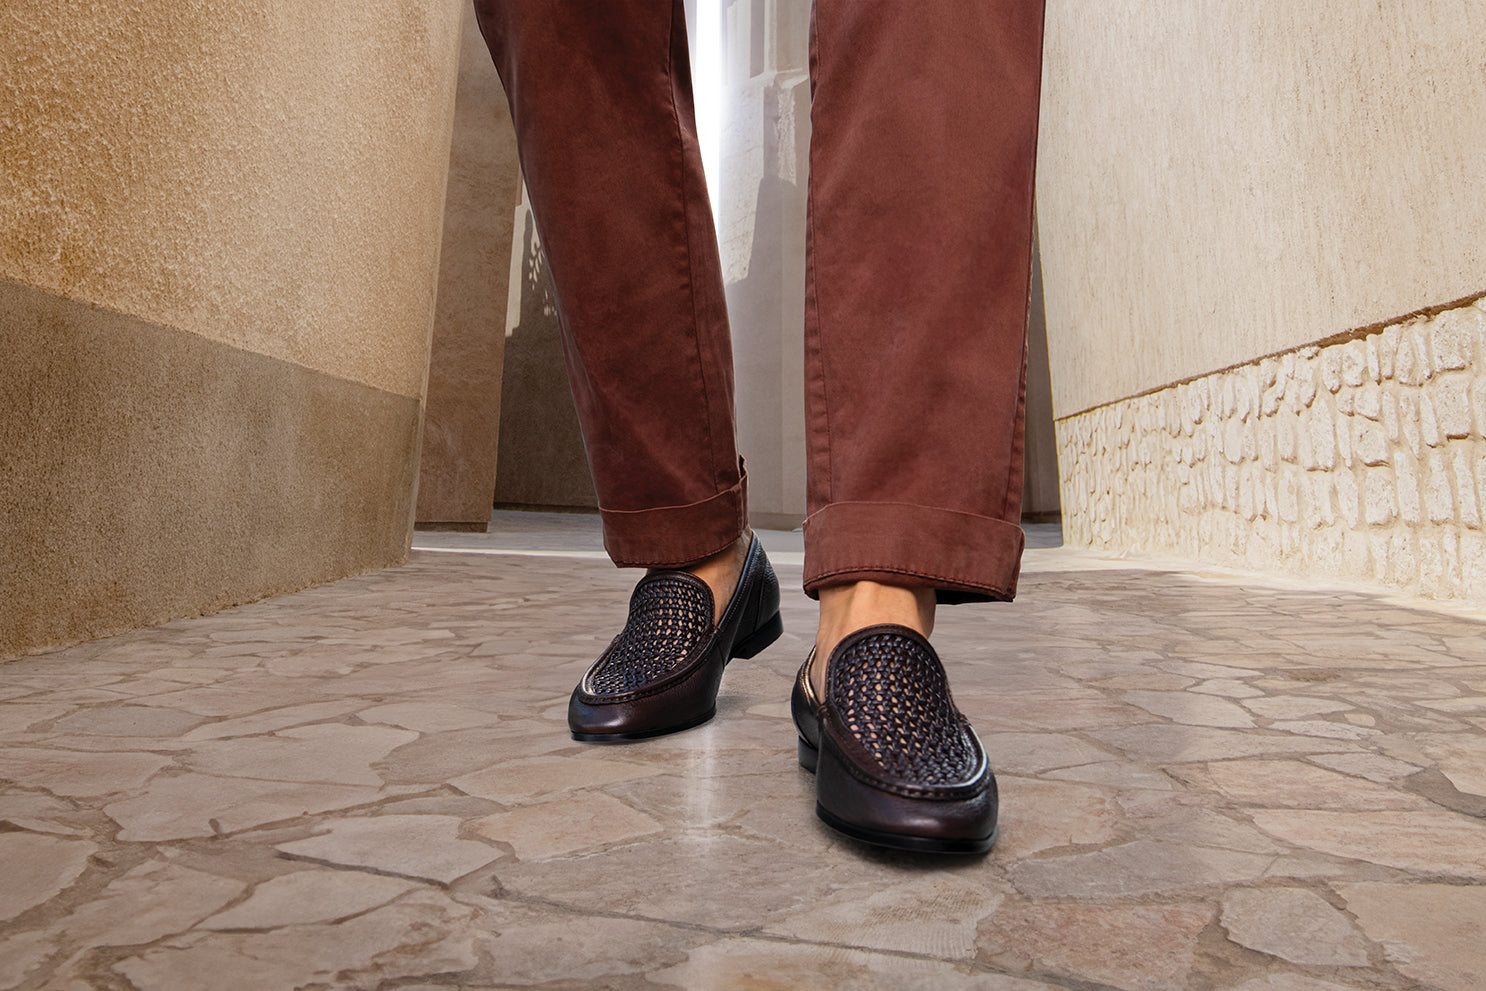 Men's ALDO Sandals | Shoes | 6pm